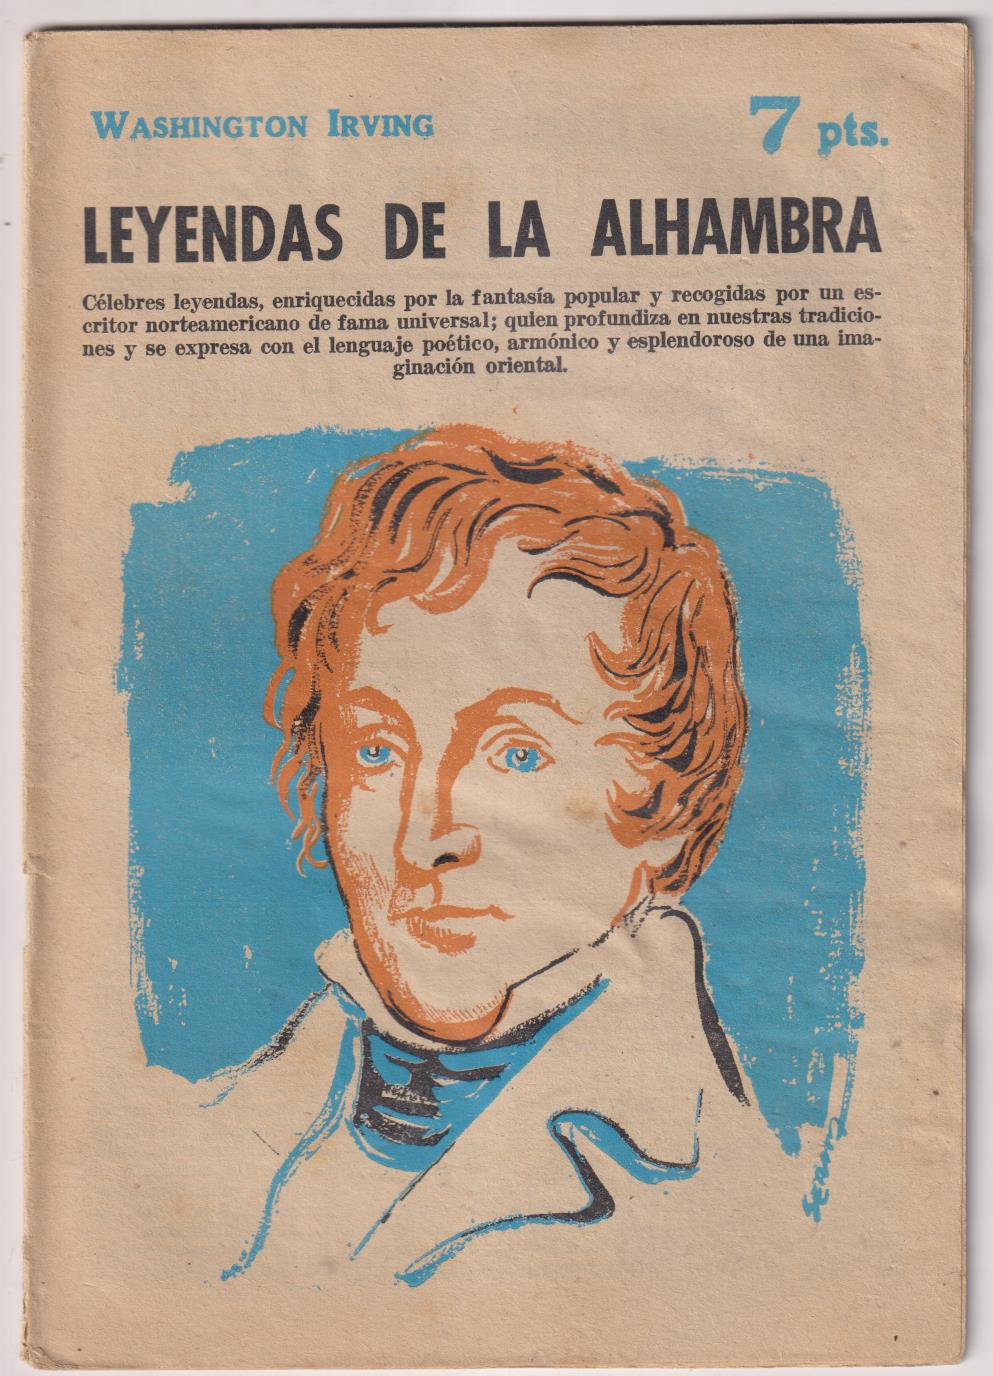 Revista Literaria Novelas y Cuentos nº 1801. Leyendas de la Alhambra por W. Irving. 1963